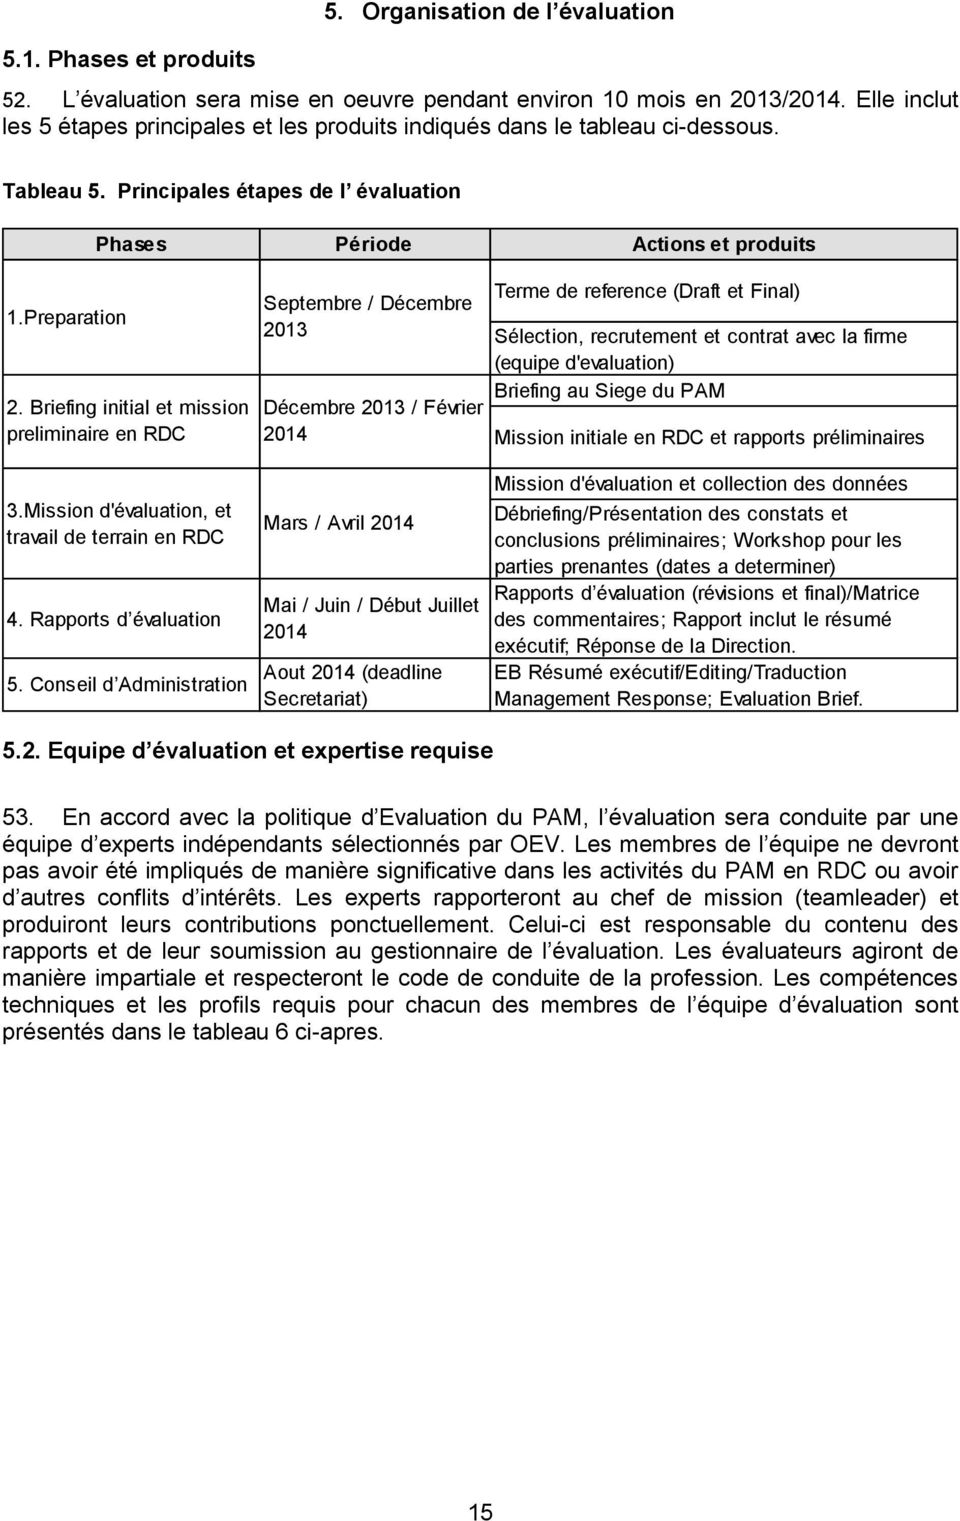 Briefing initial et mission preliminaire en RDC Septembre / Décembre 2013 Décembre 2013 / Février 2014 Terme de reference (Draft et Final) Sélection, recrutement et contrat avec la firme (equipe